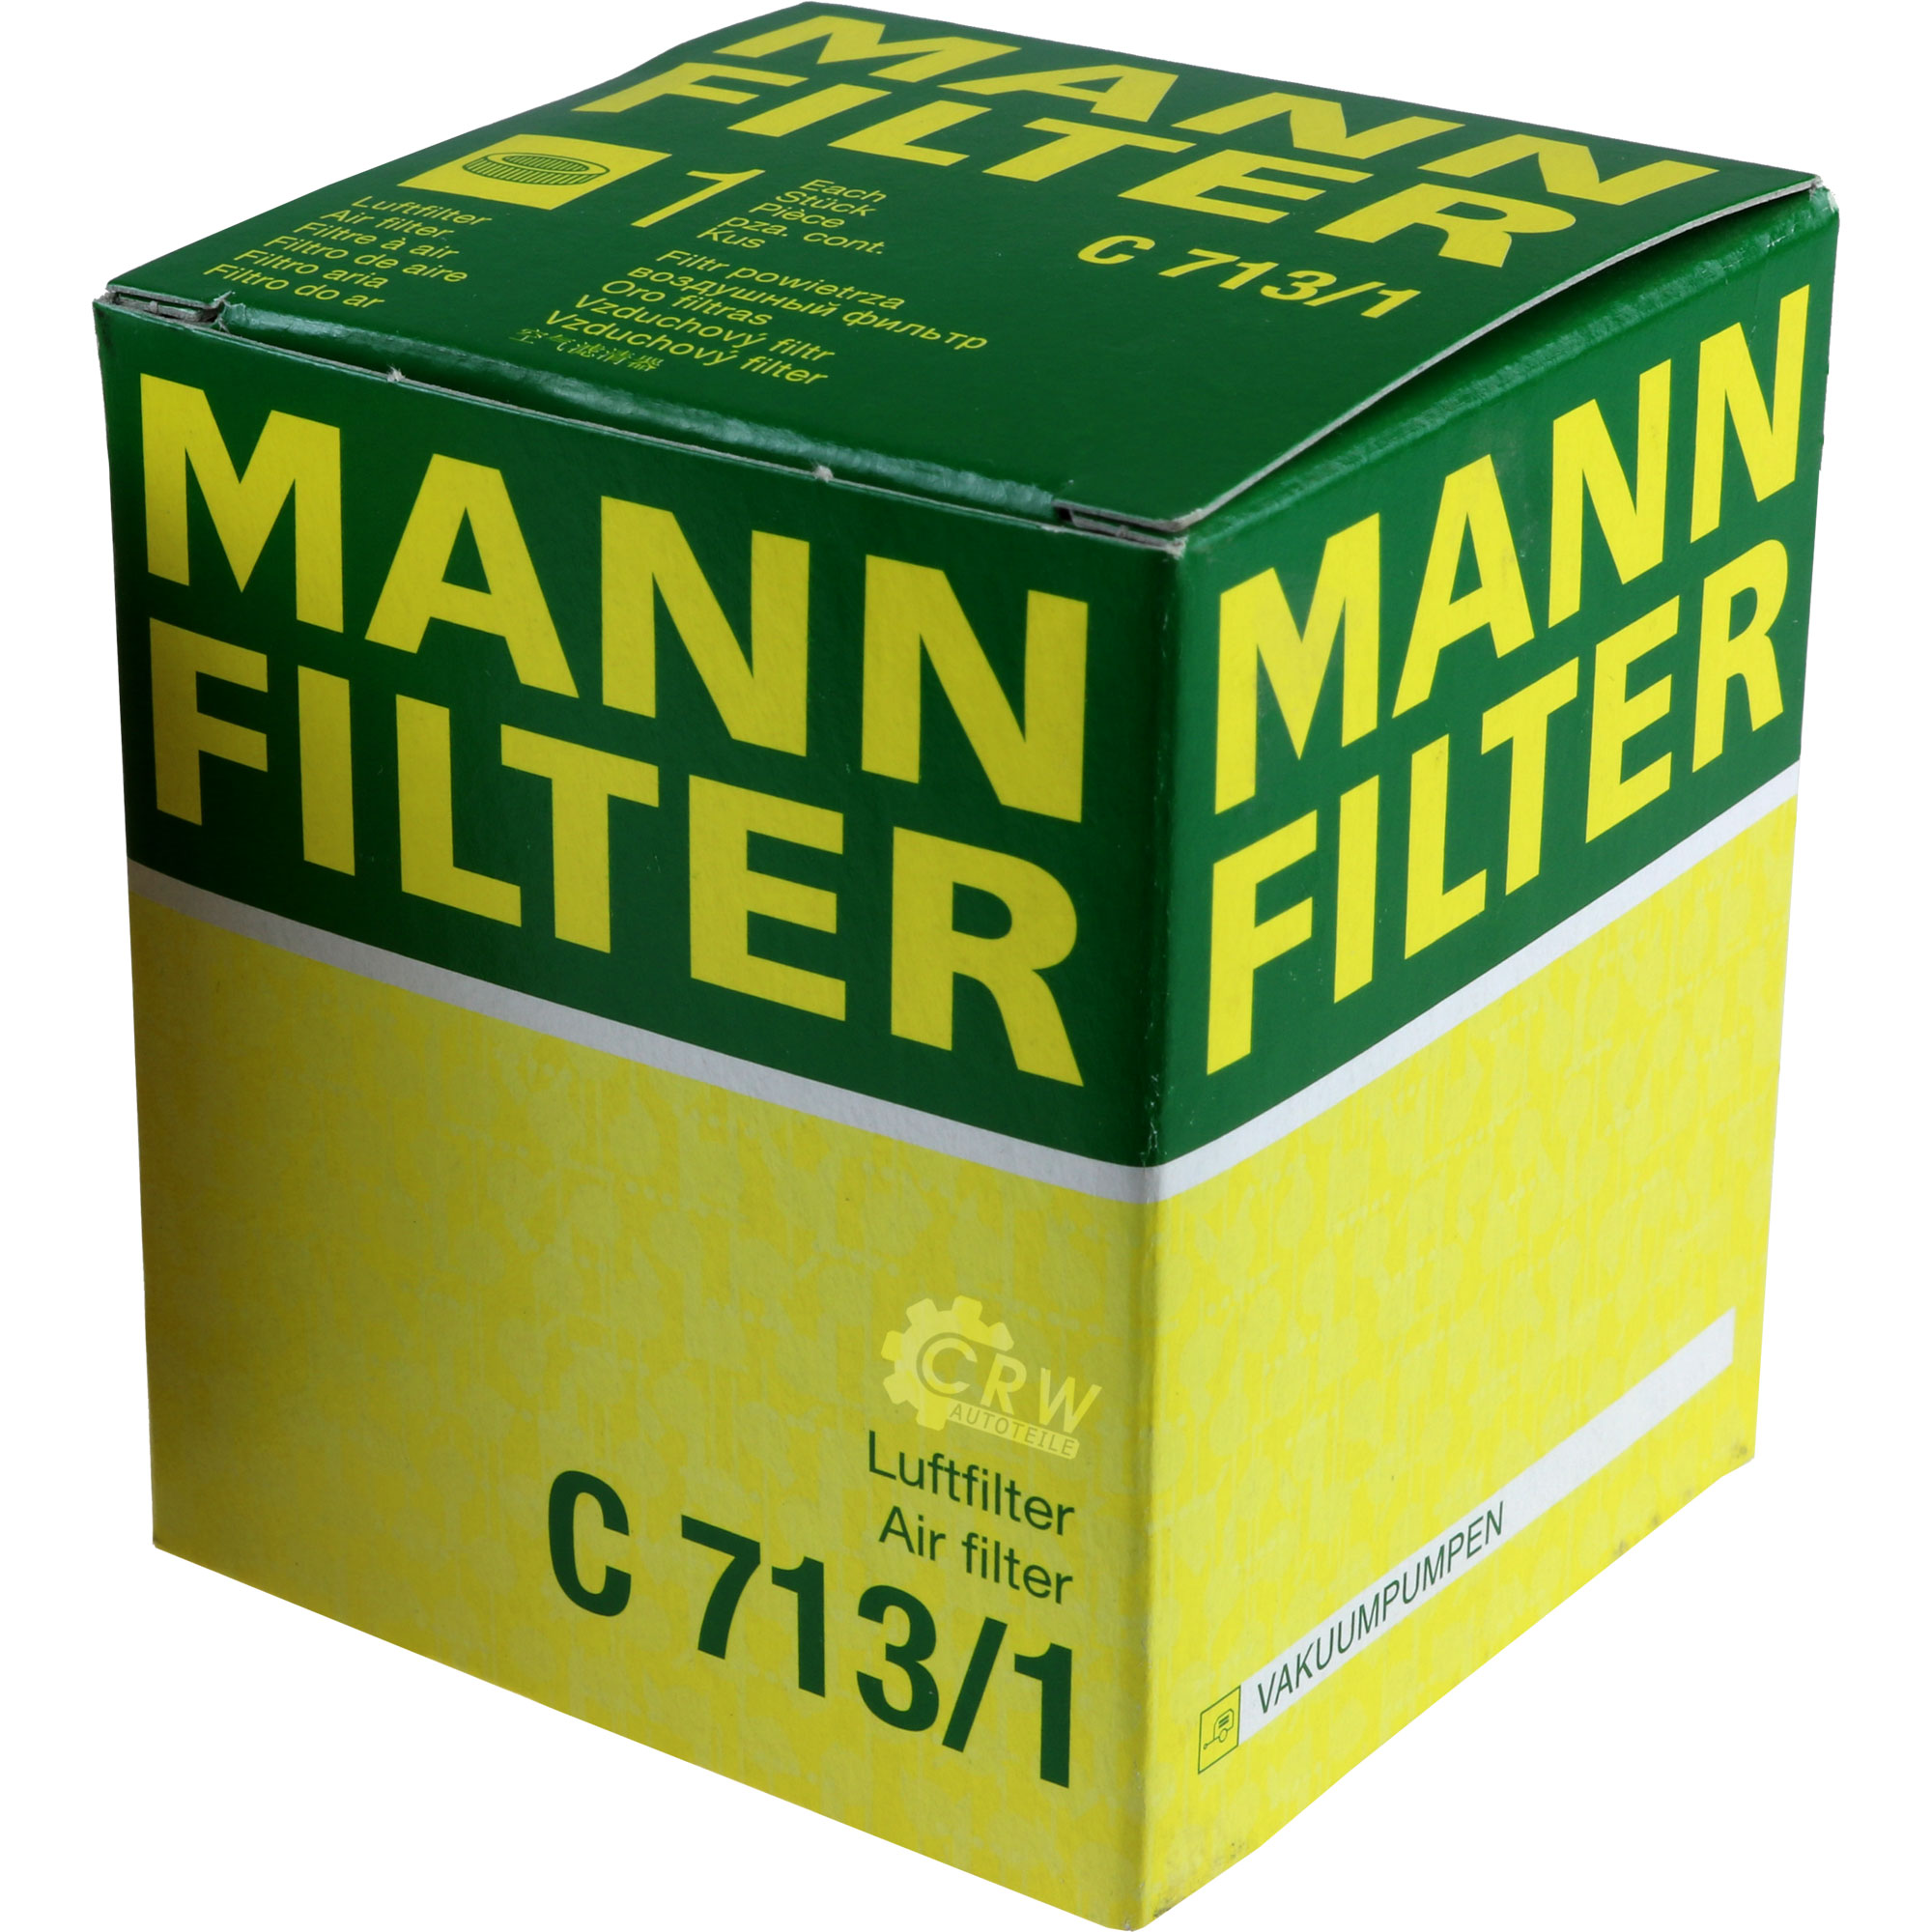 MANN-FILTER Luftfilter C 713/1